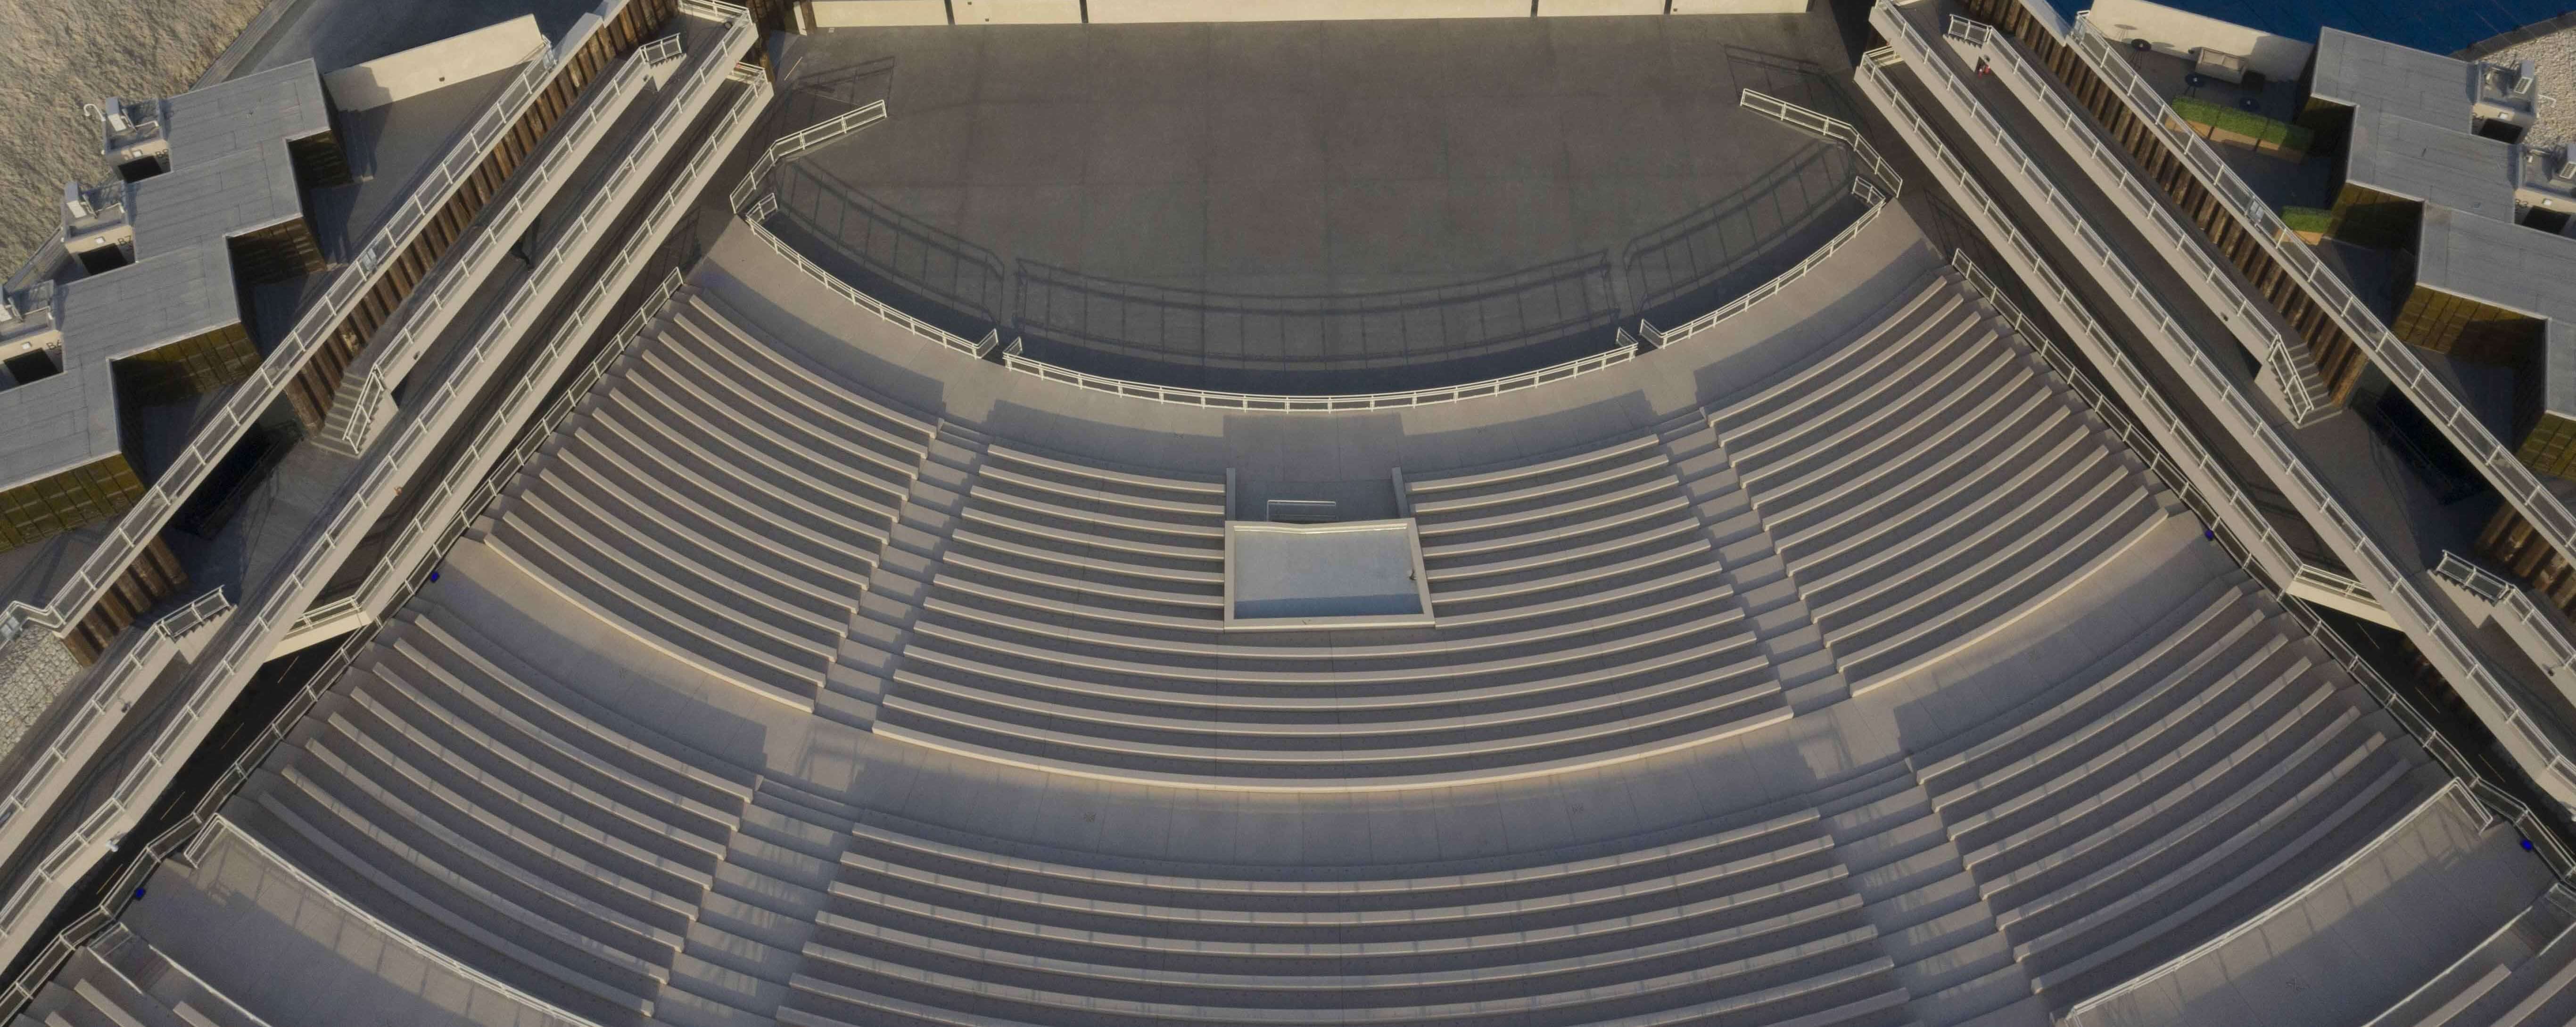 Aerial View of the Theatre at Al Dana Amphitheatre, Bahrain's newest live entertainment destination.